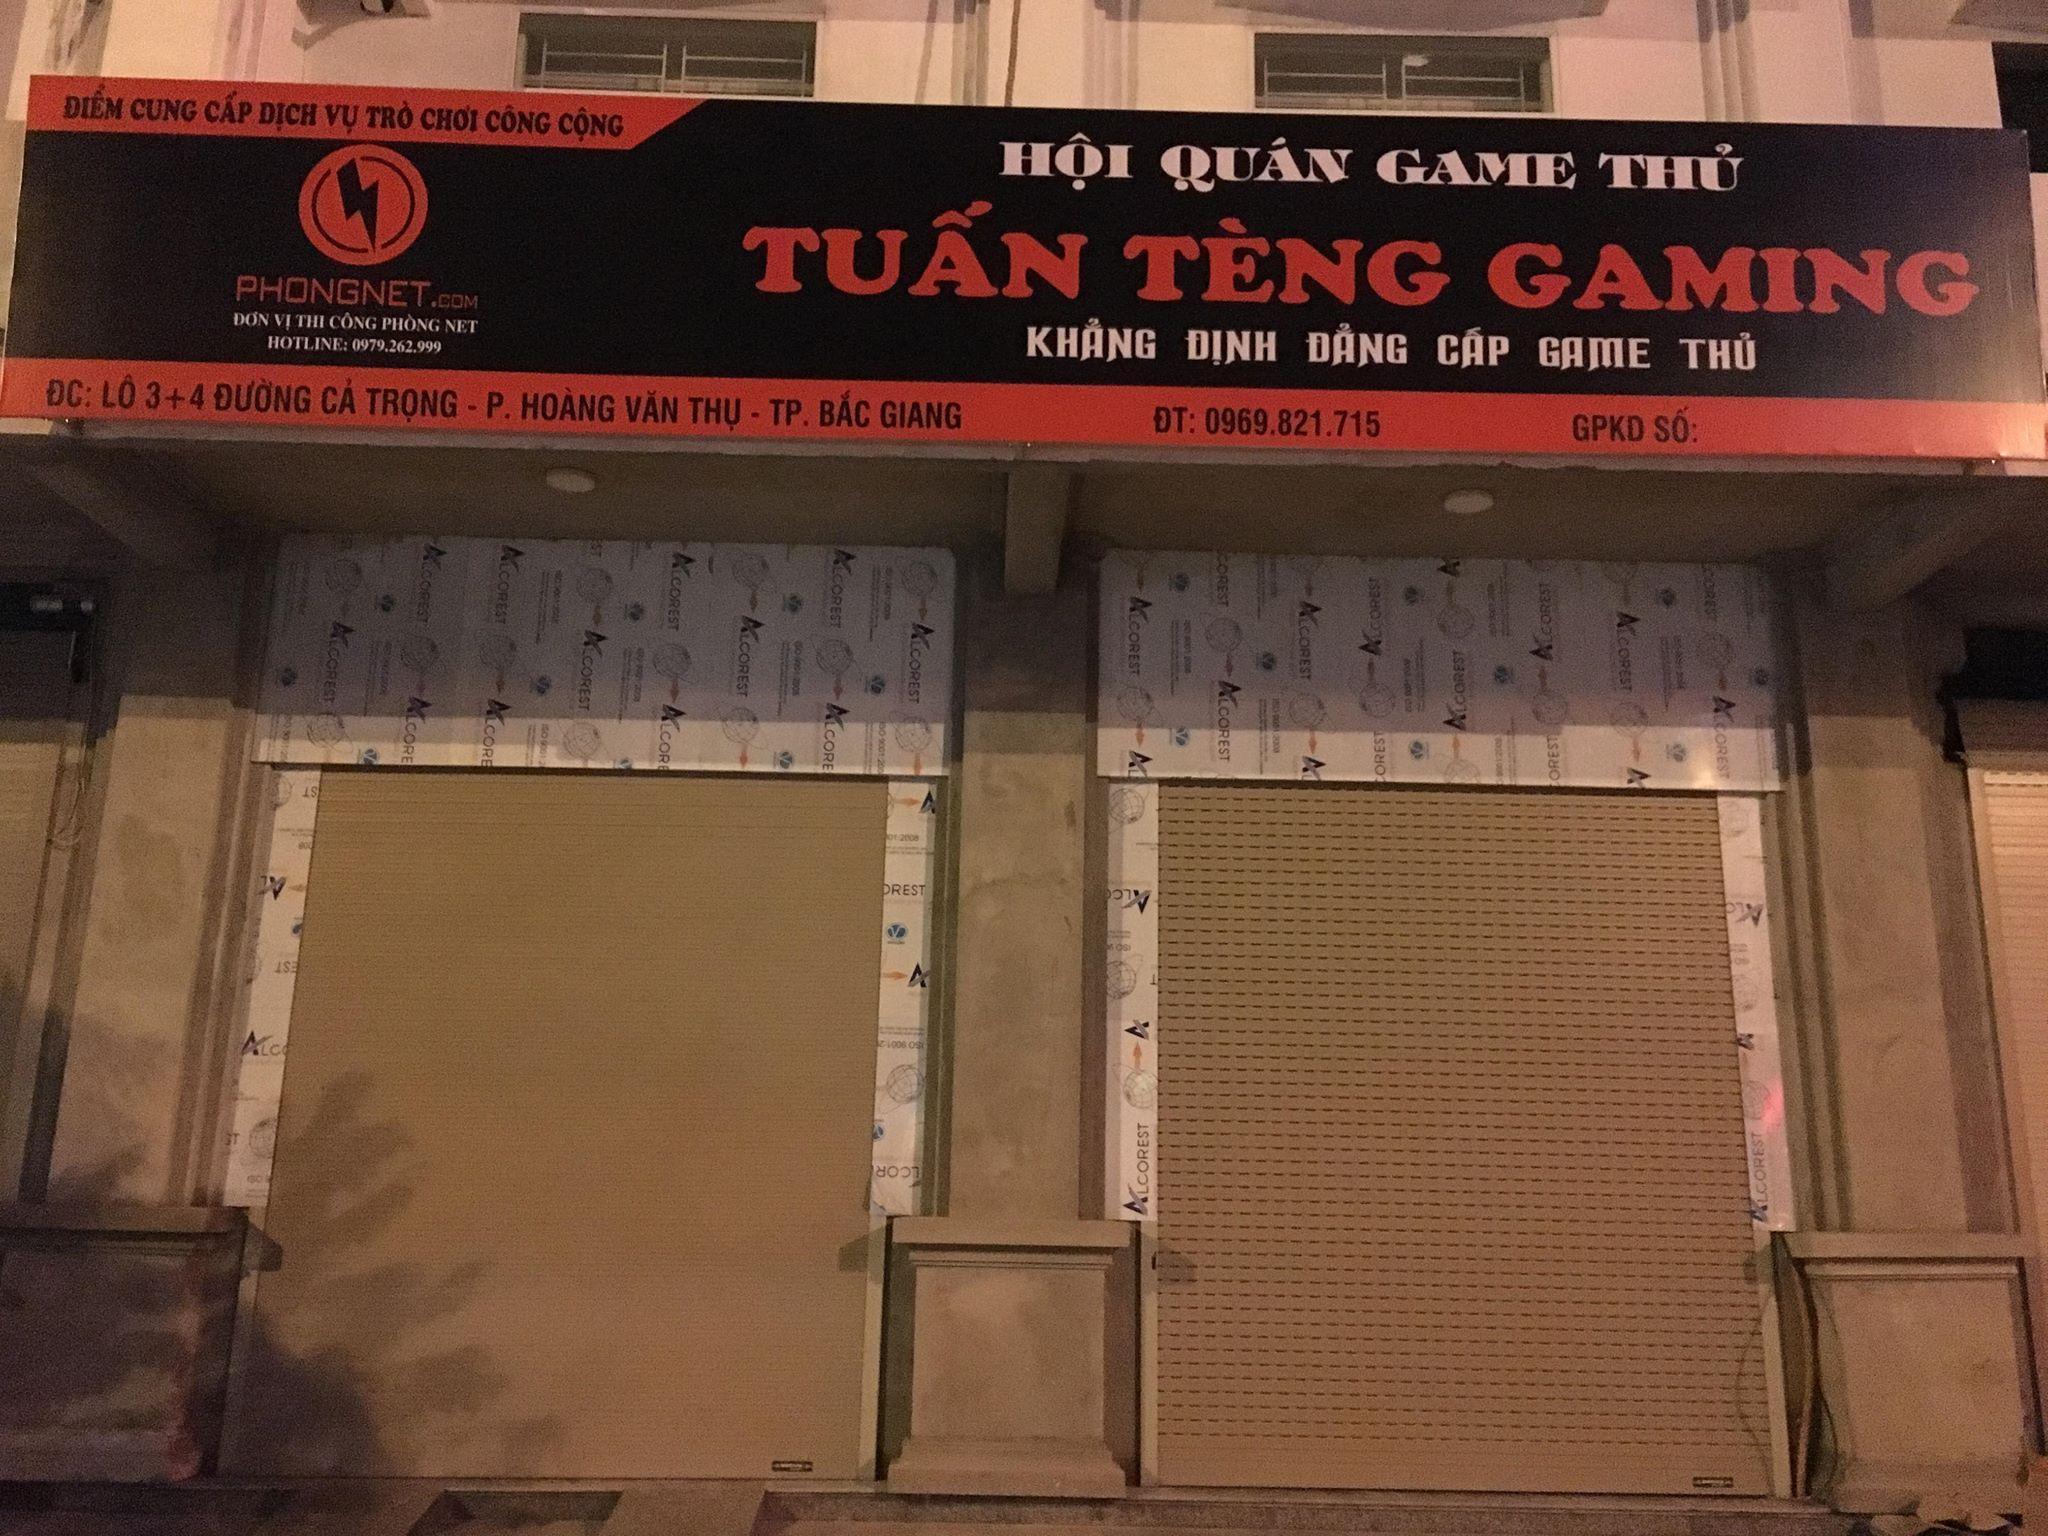 TUẤN TÈNG GAMING – Cyber Game Chơi PUBG Đầu tiên tại Bắc Giang